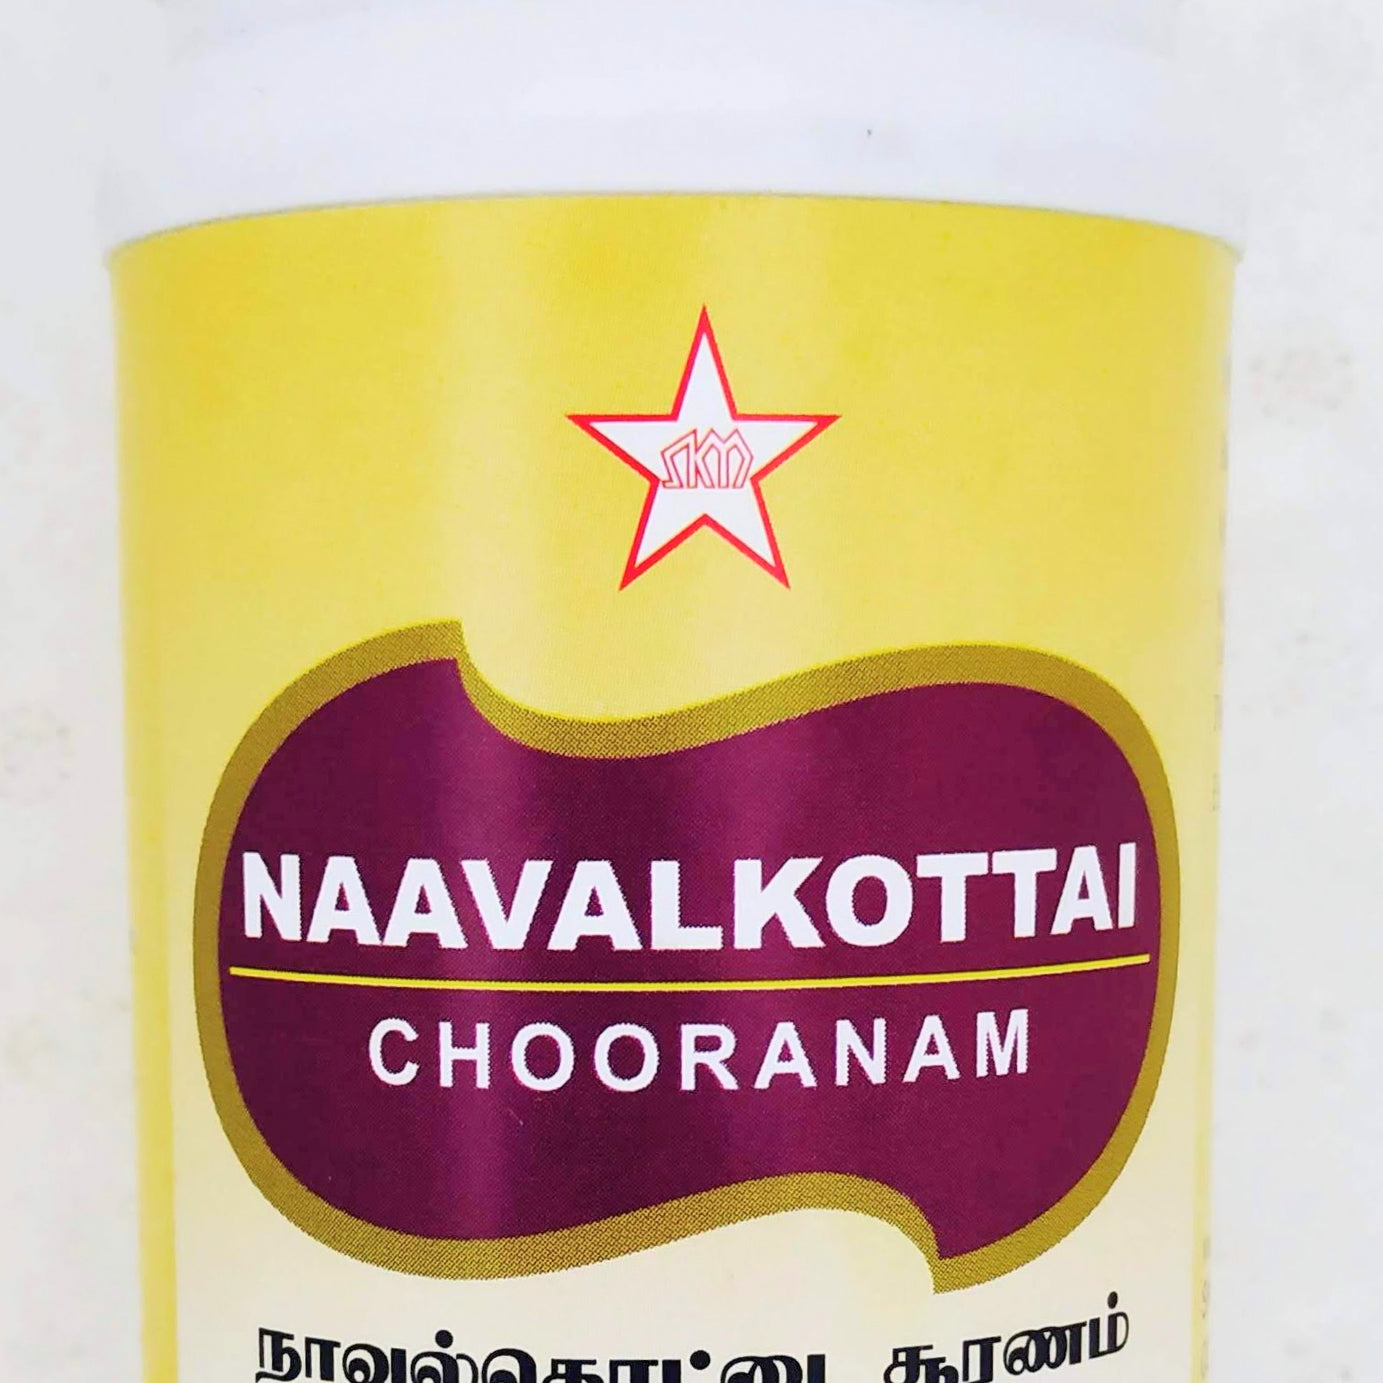 Shop Navalkottai churanam 100gm at price 143.00 from SKM Online - Ayush Care